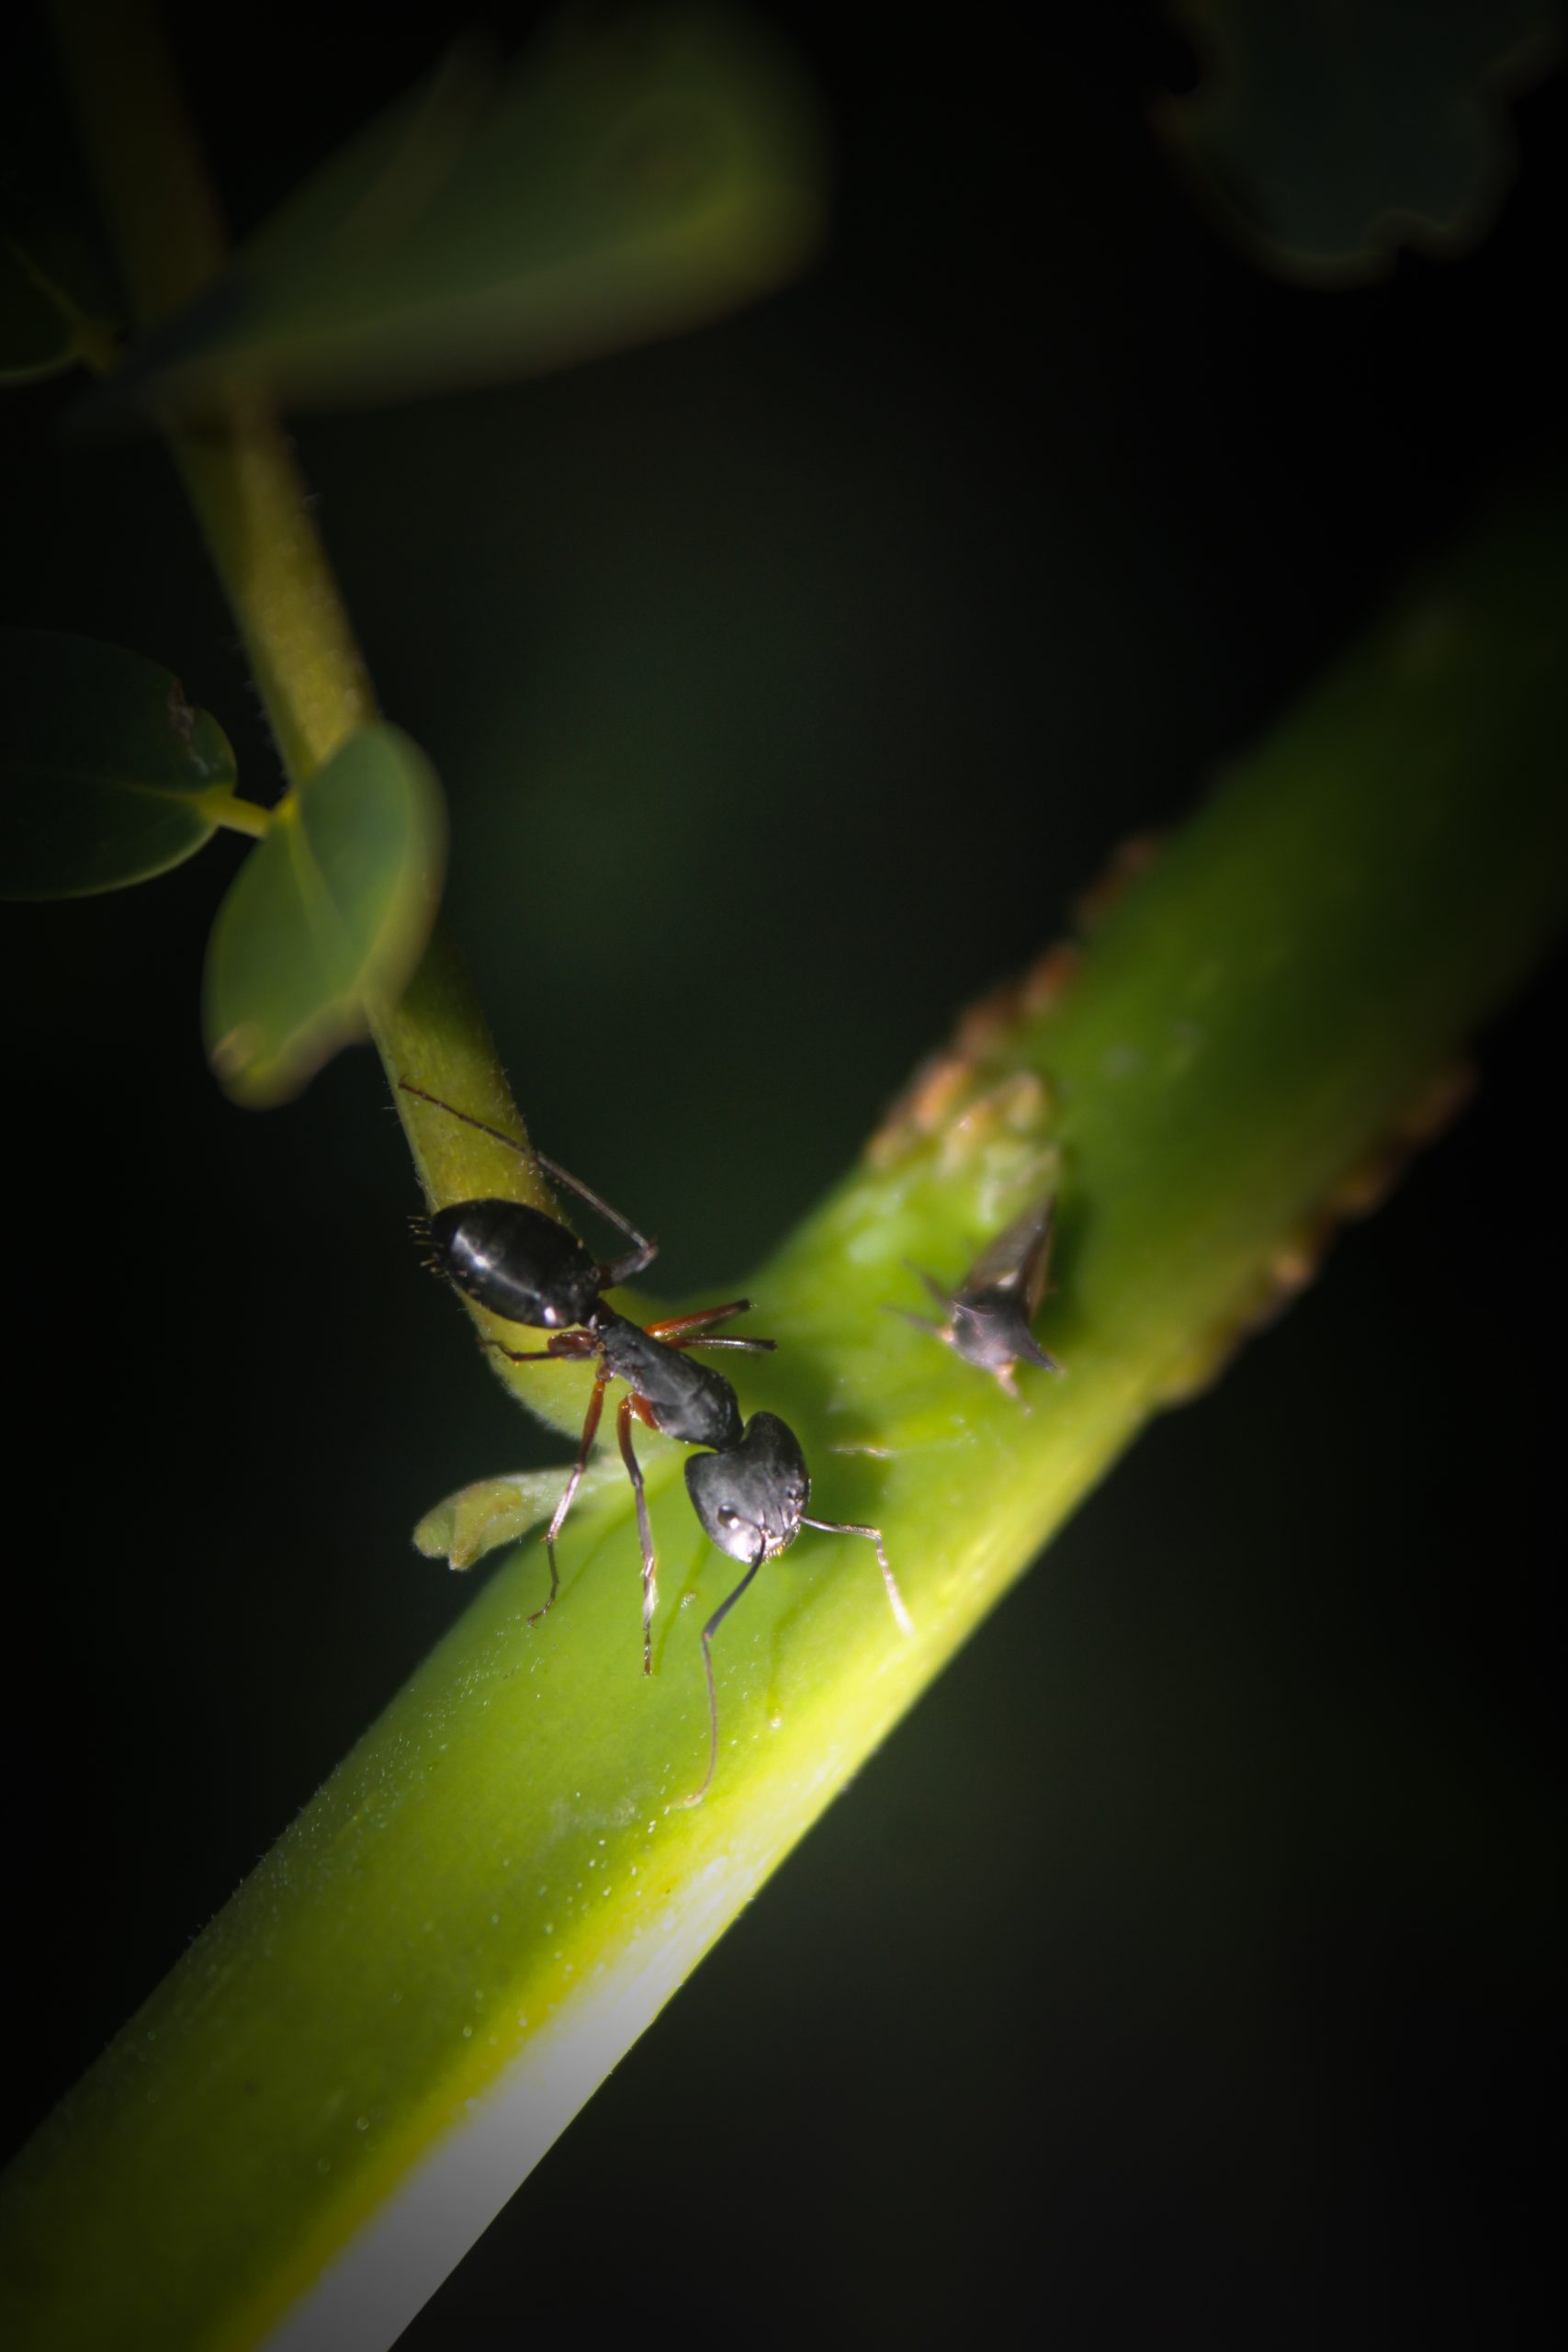 Ant in Plant Stem on Focus